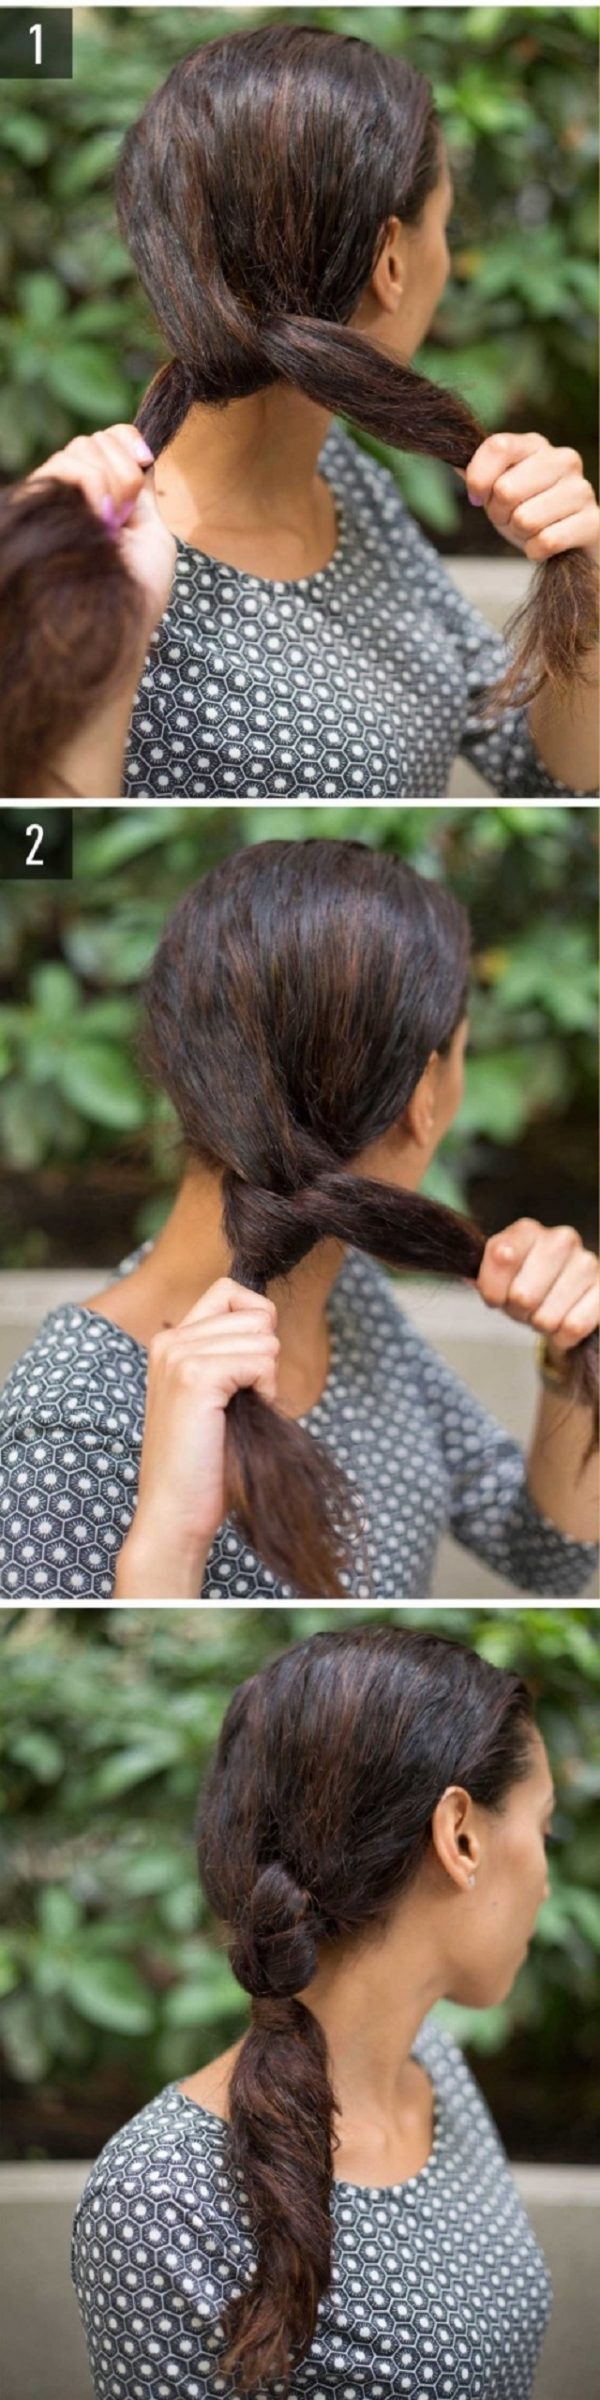 Cách làm những kiểu tóc đẹp, sang trọng nhanh nhất cho các nàng xuống phố (5)